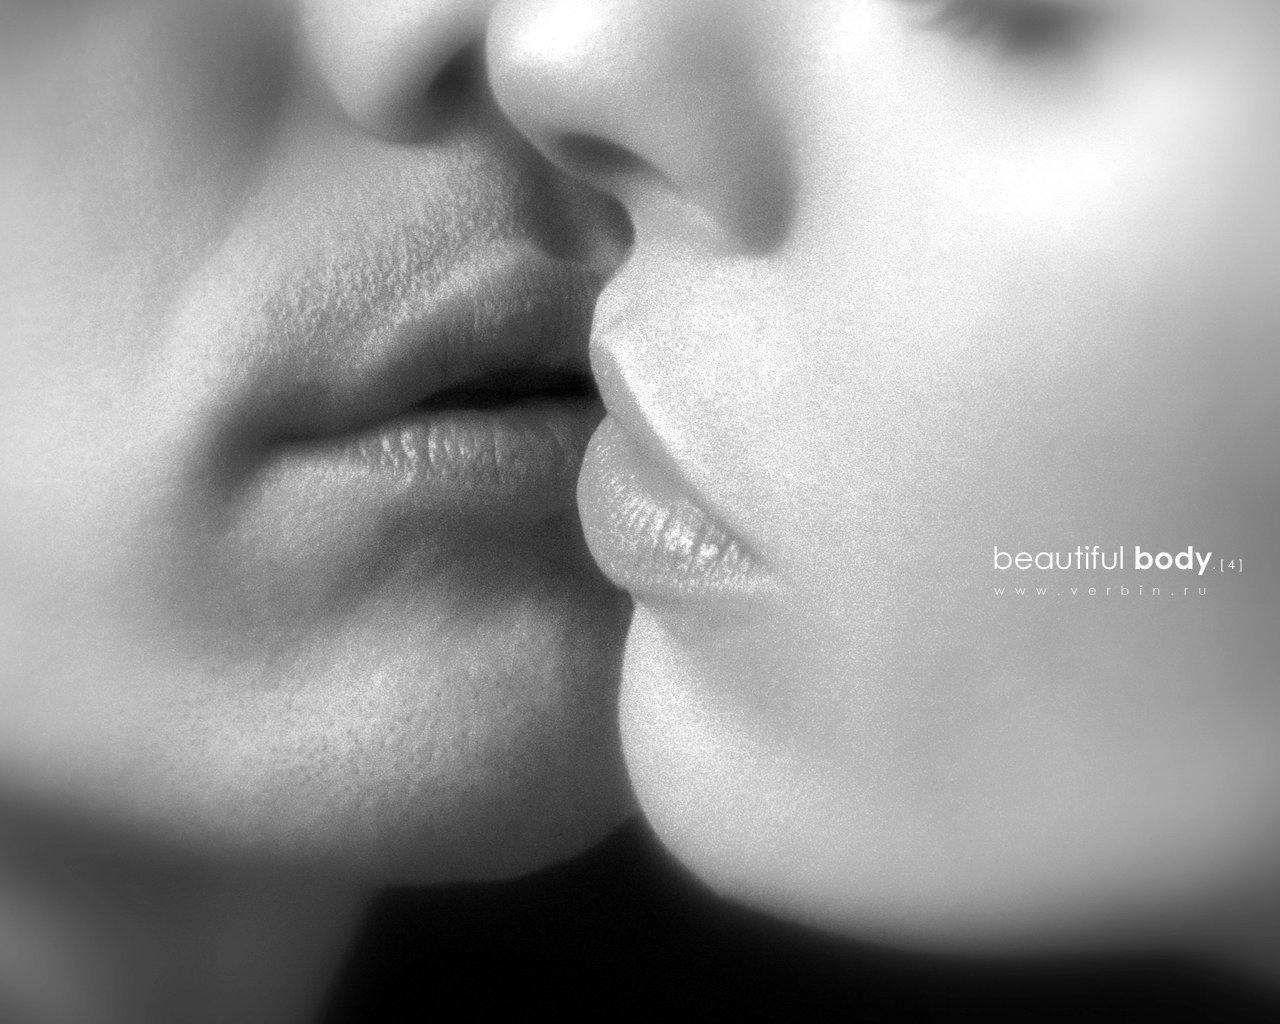 Губы твои птица. Поцелуй. Картинки поцелуя в губы. Картинки с поцелуями и надписями. Поцелуй любимому.